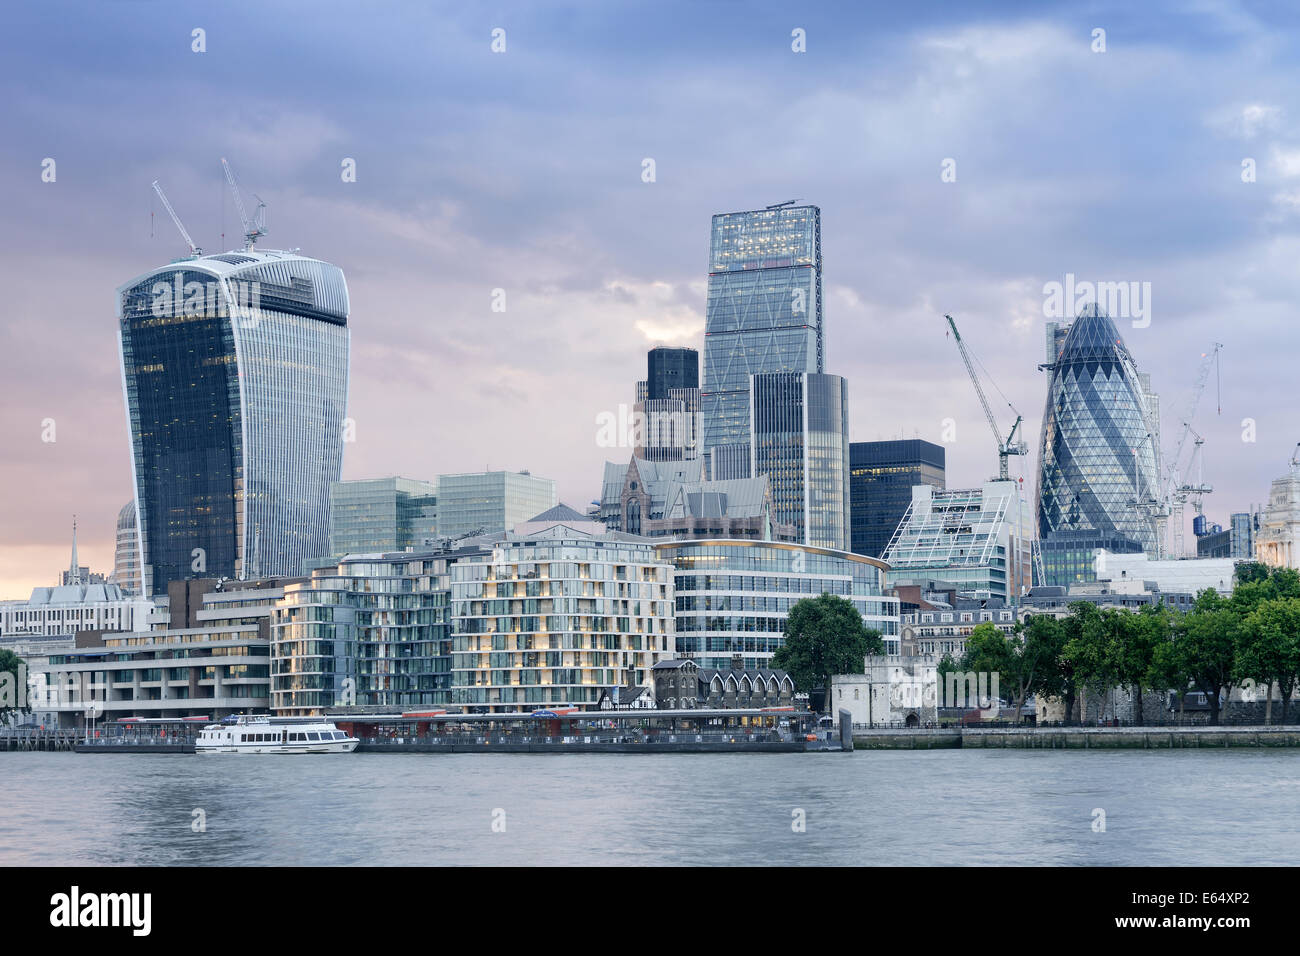 City of London Skyline, UK Stock Photo - Alamy